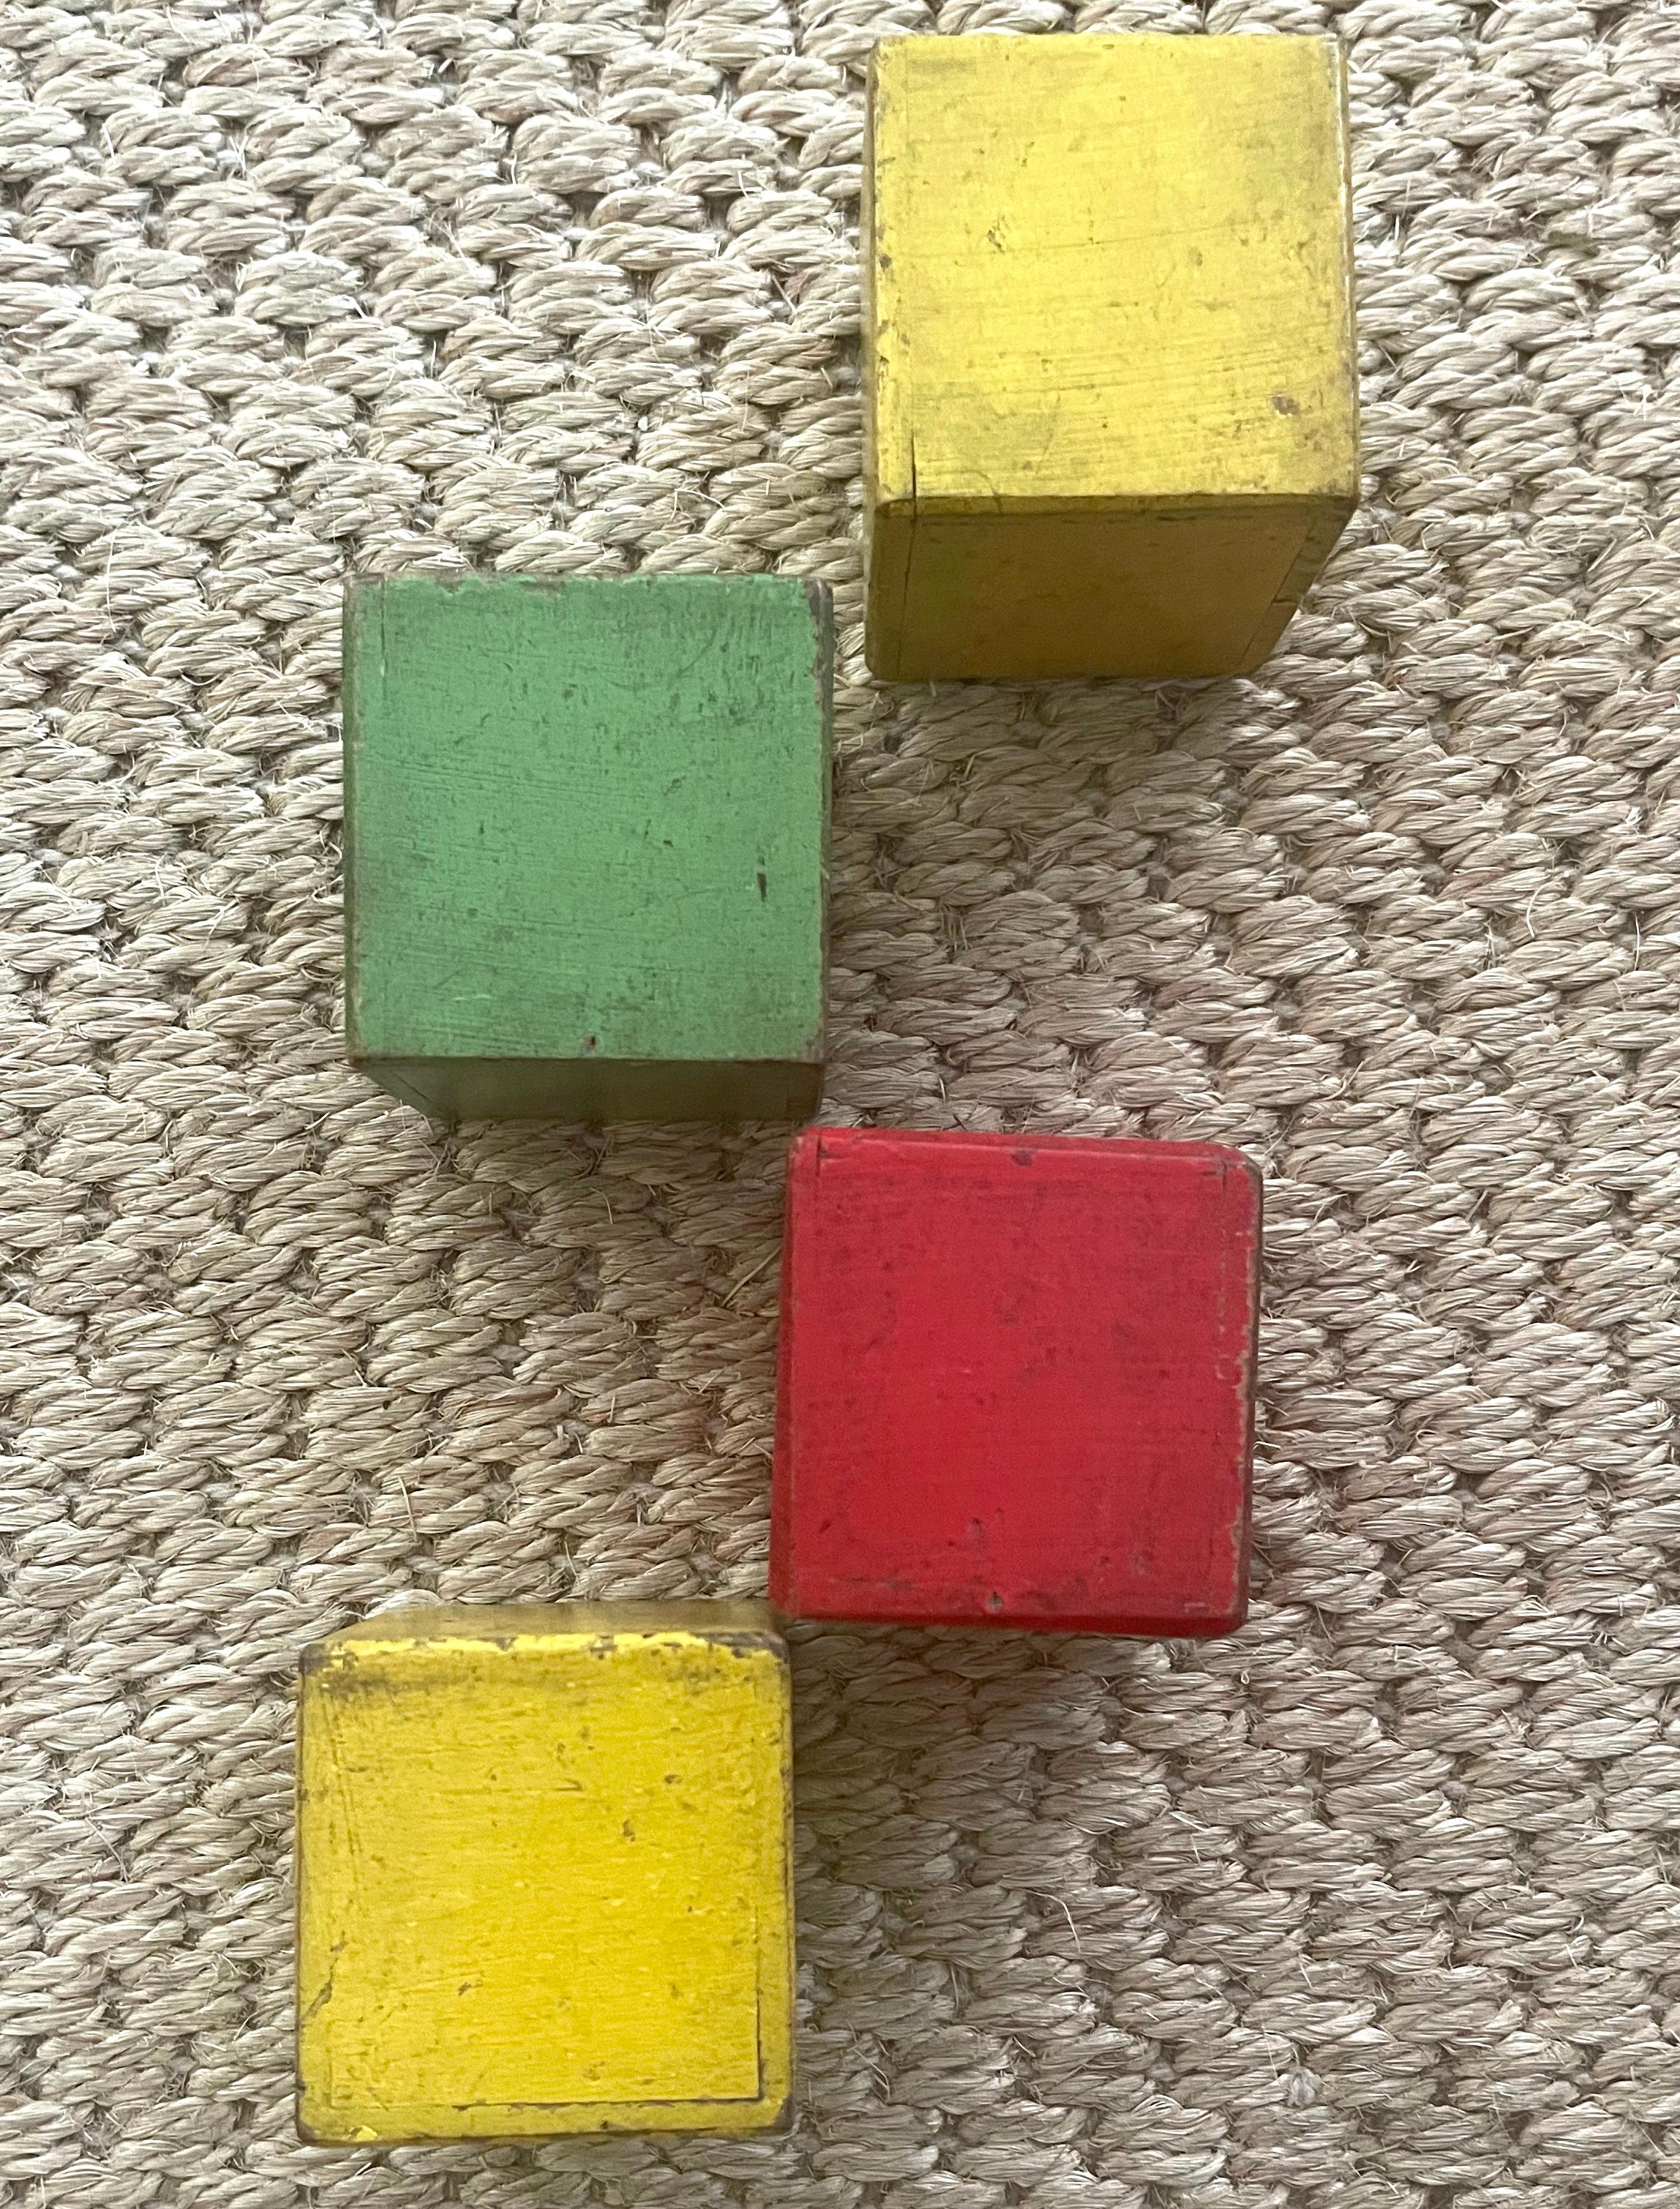 Blocs hochets allemands en bois peint de forme carrée. Quatre blocs en bois peints en jaune, rouge et vert, conçus avec un hochet interne adapté aux enfants en bas âge. Allemagne, années 1930